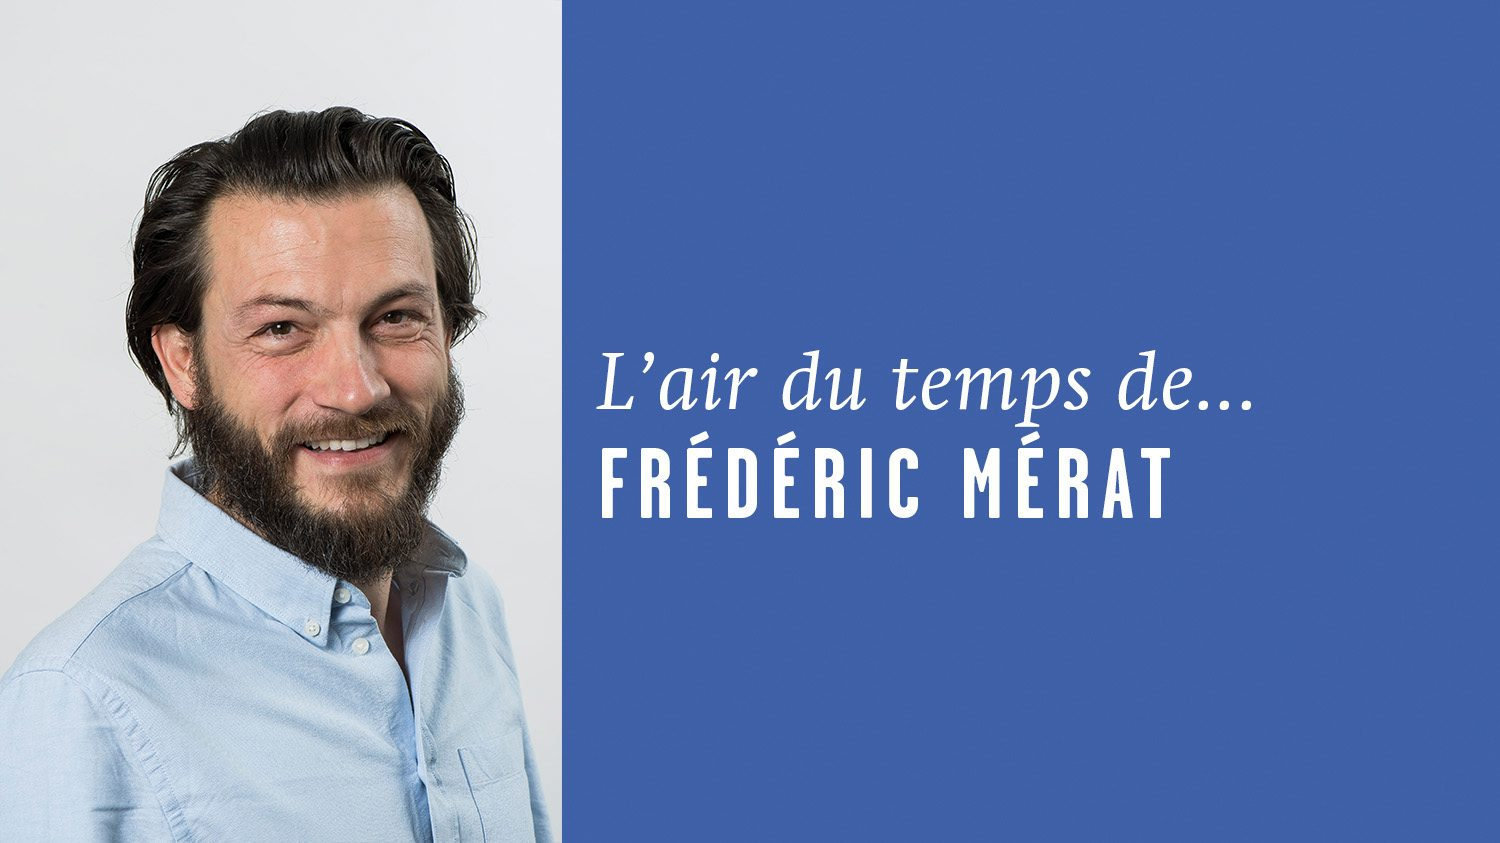 AirDutemps-FredericMerat (10)